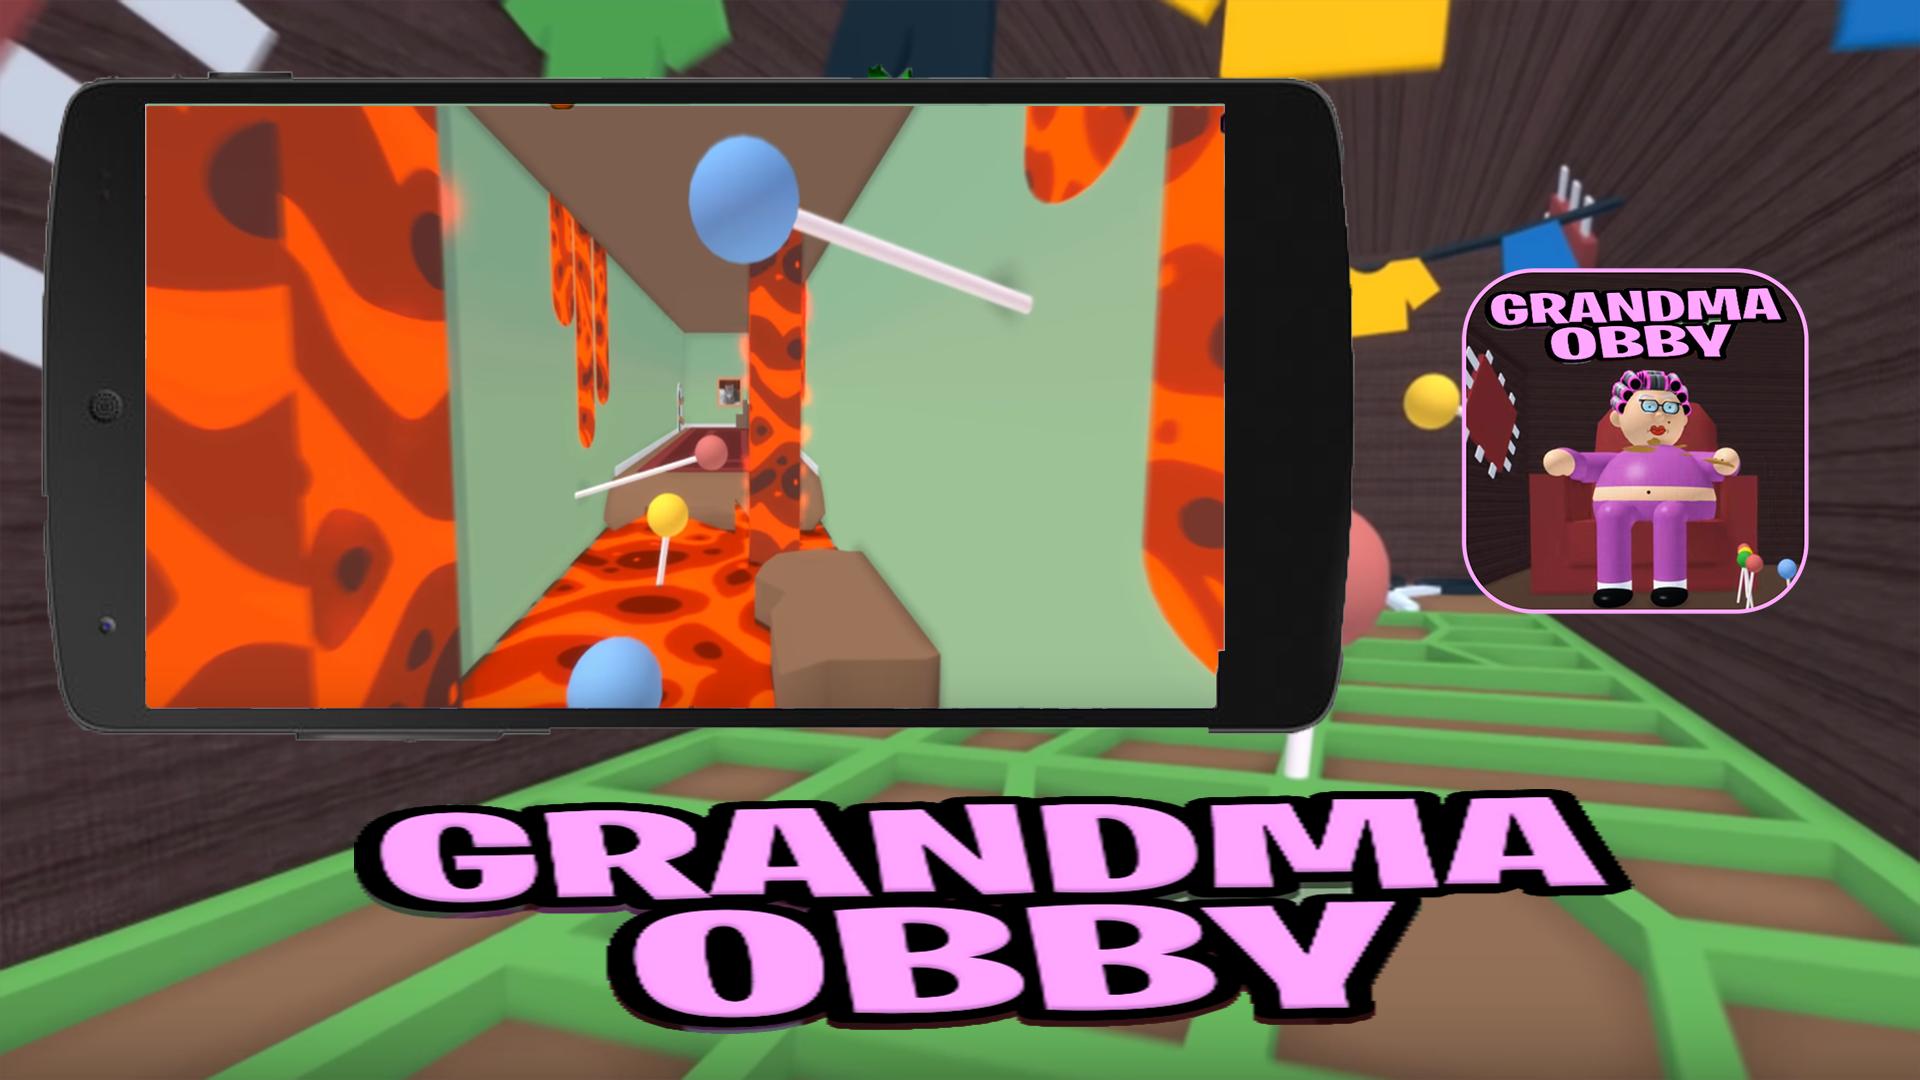 Escape Granny Obby Roblox Youtube